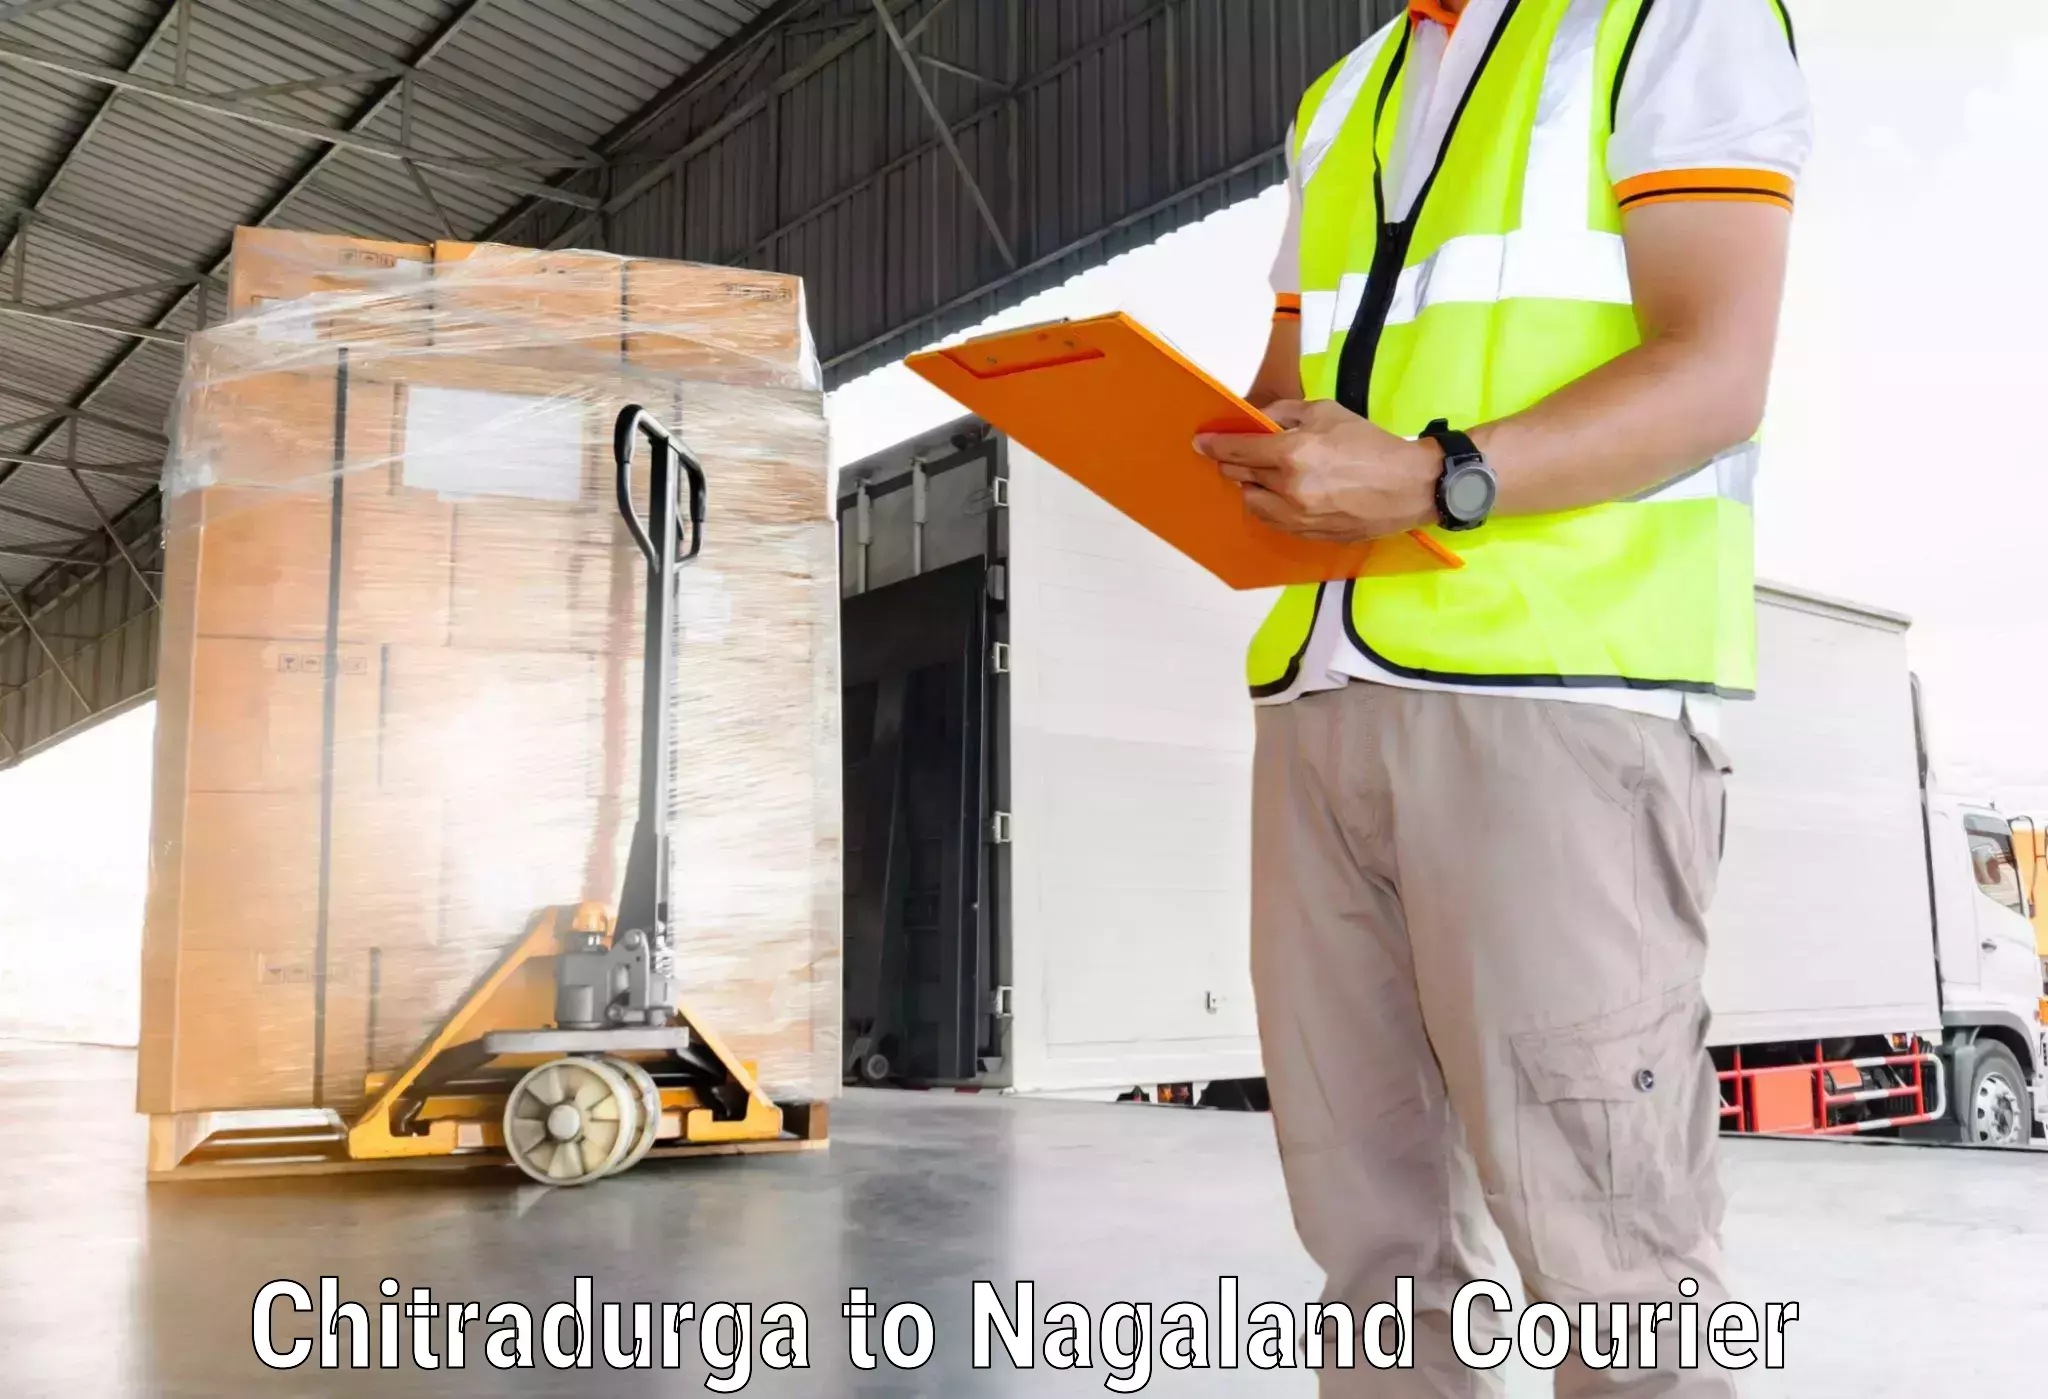 Seamless shipping service Chitradurga to Nagaland